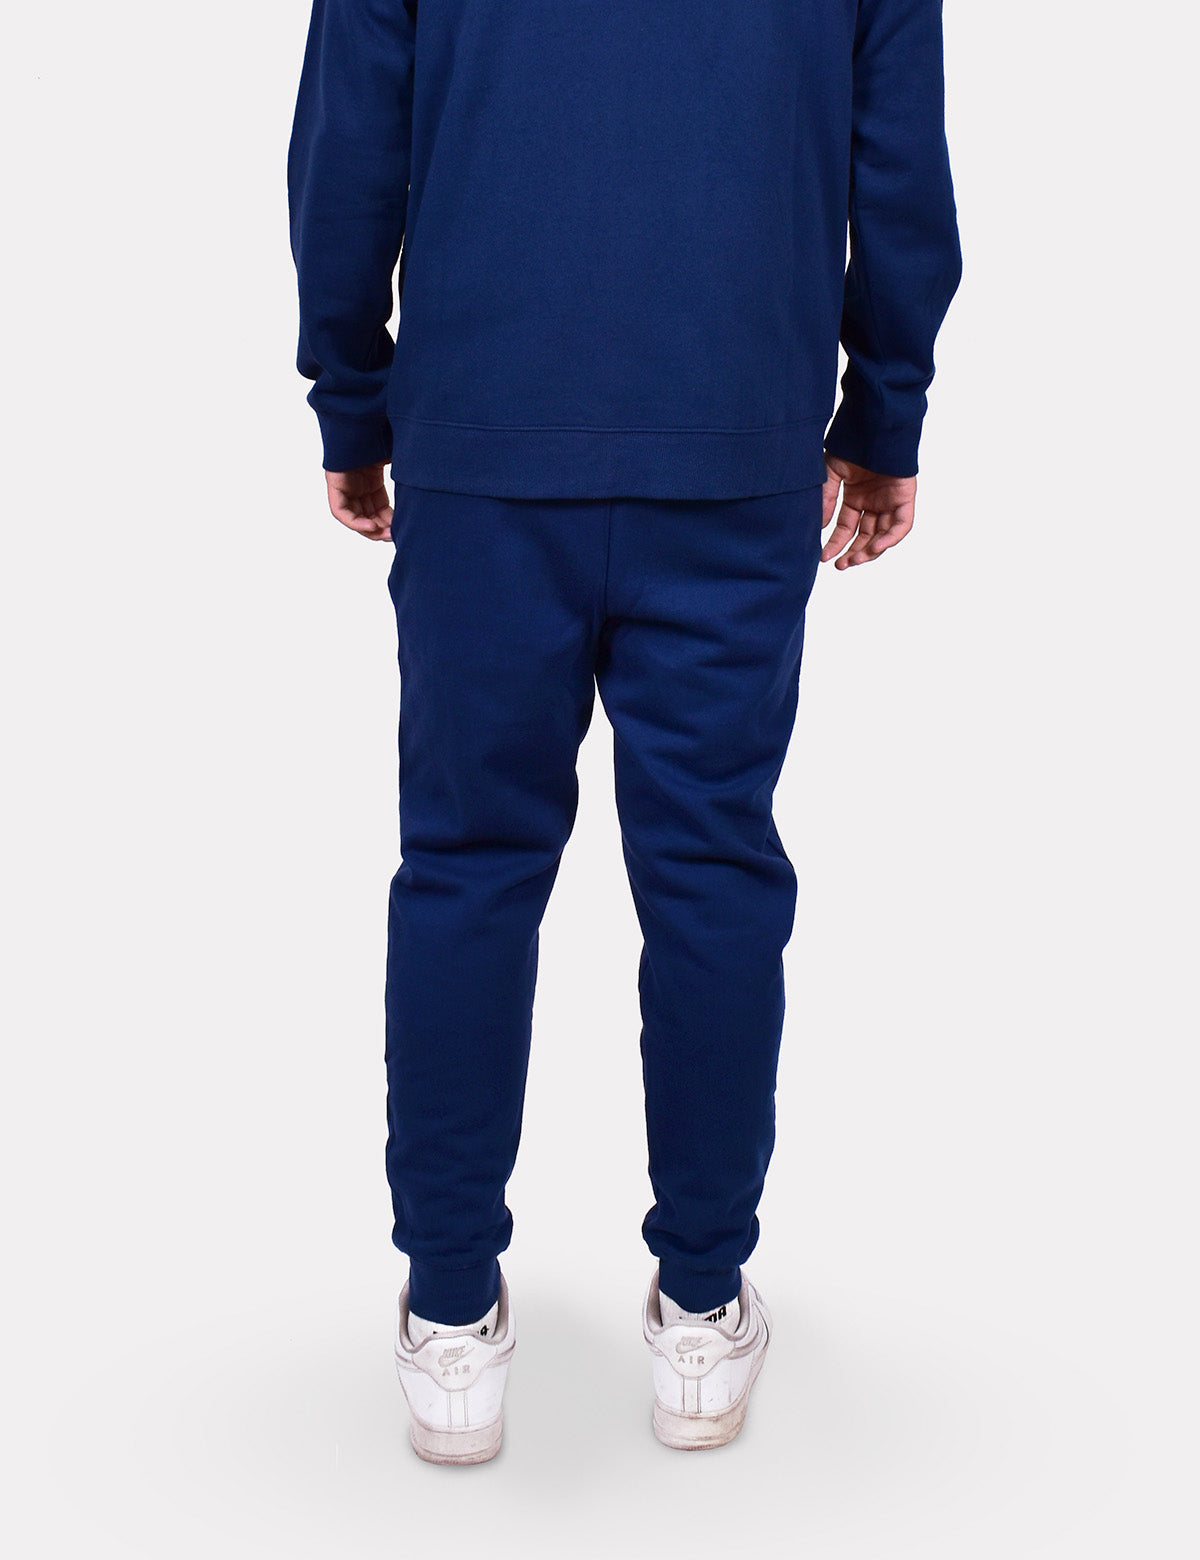  LZJDS Pantalones deportivos para hombre de gimnasio ajustados  con bolsillos, pantalones deportivos para correr (M-3XL), color azul  marino, talla L : Ropa, Zapatos y Joyería